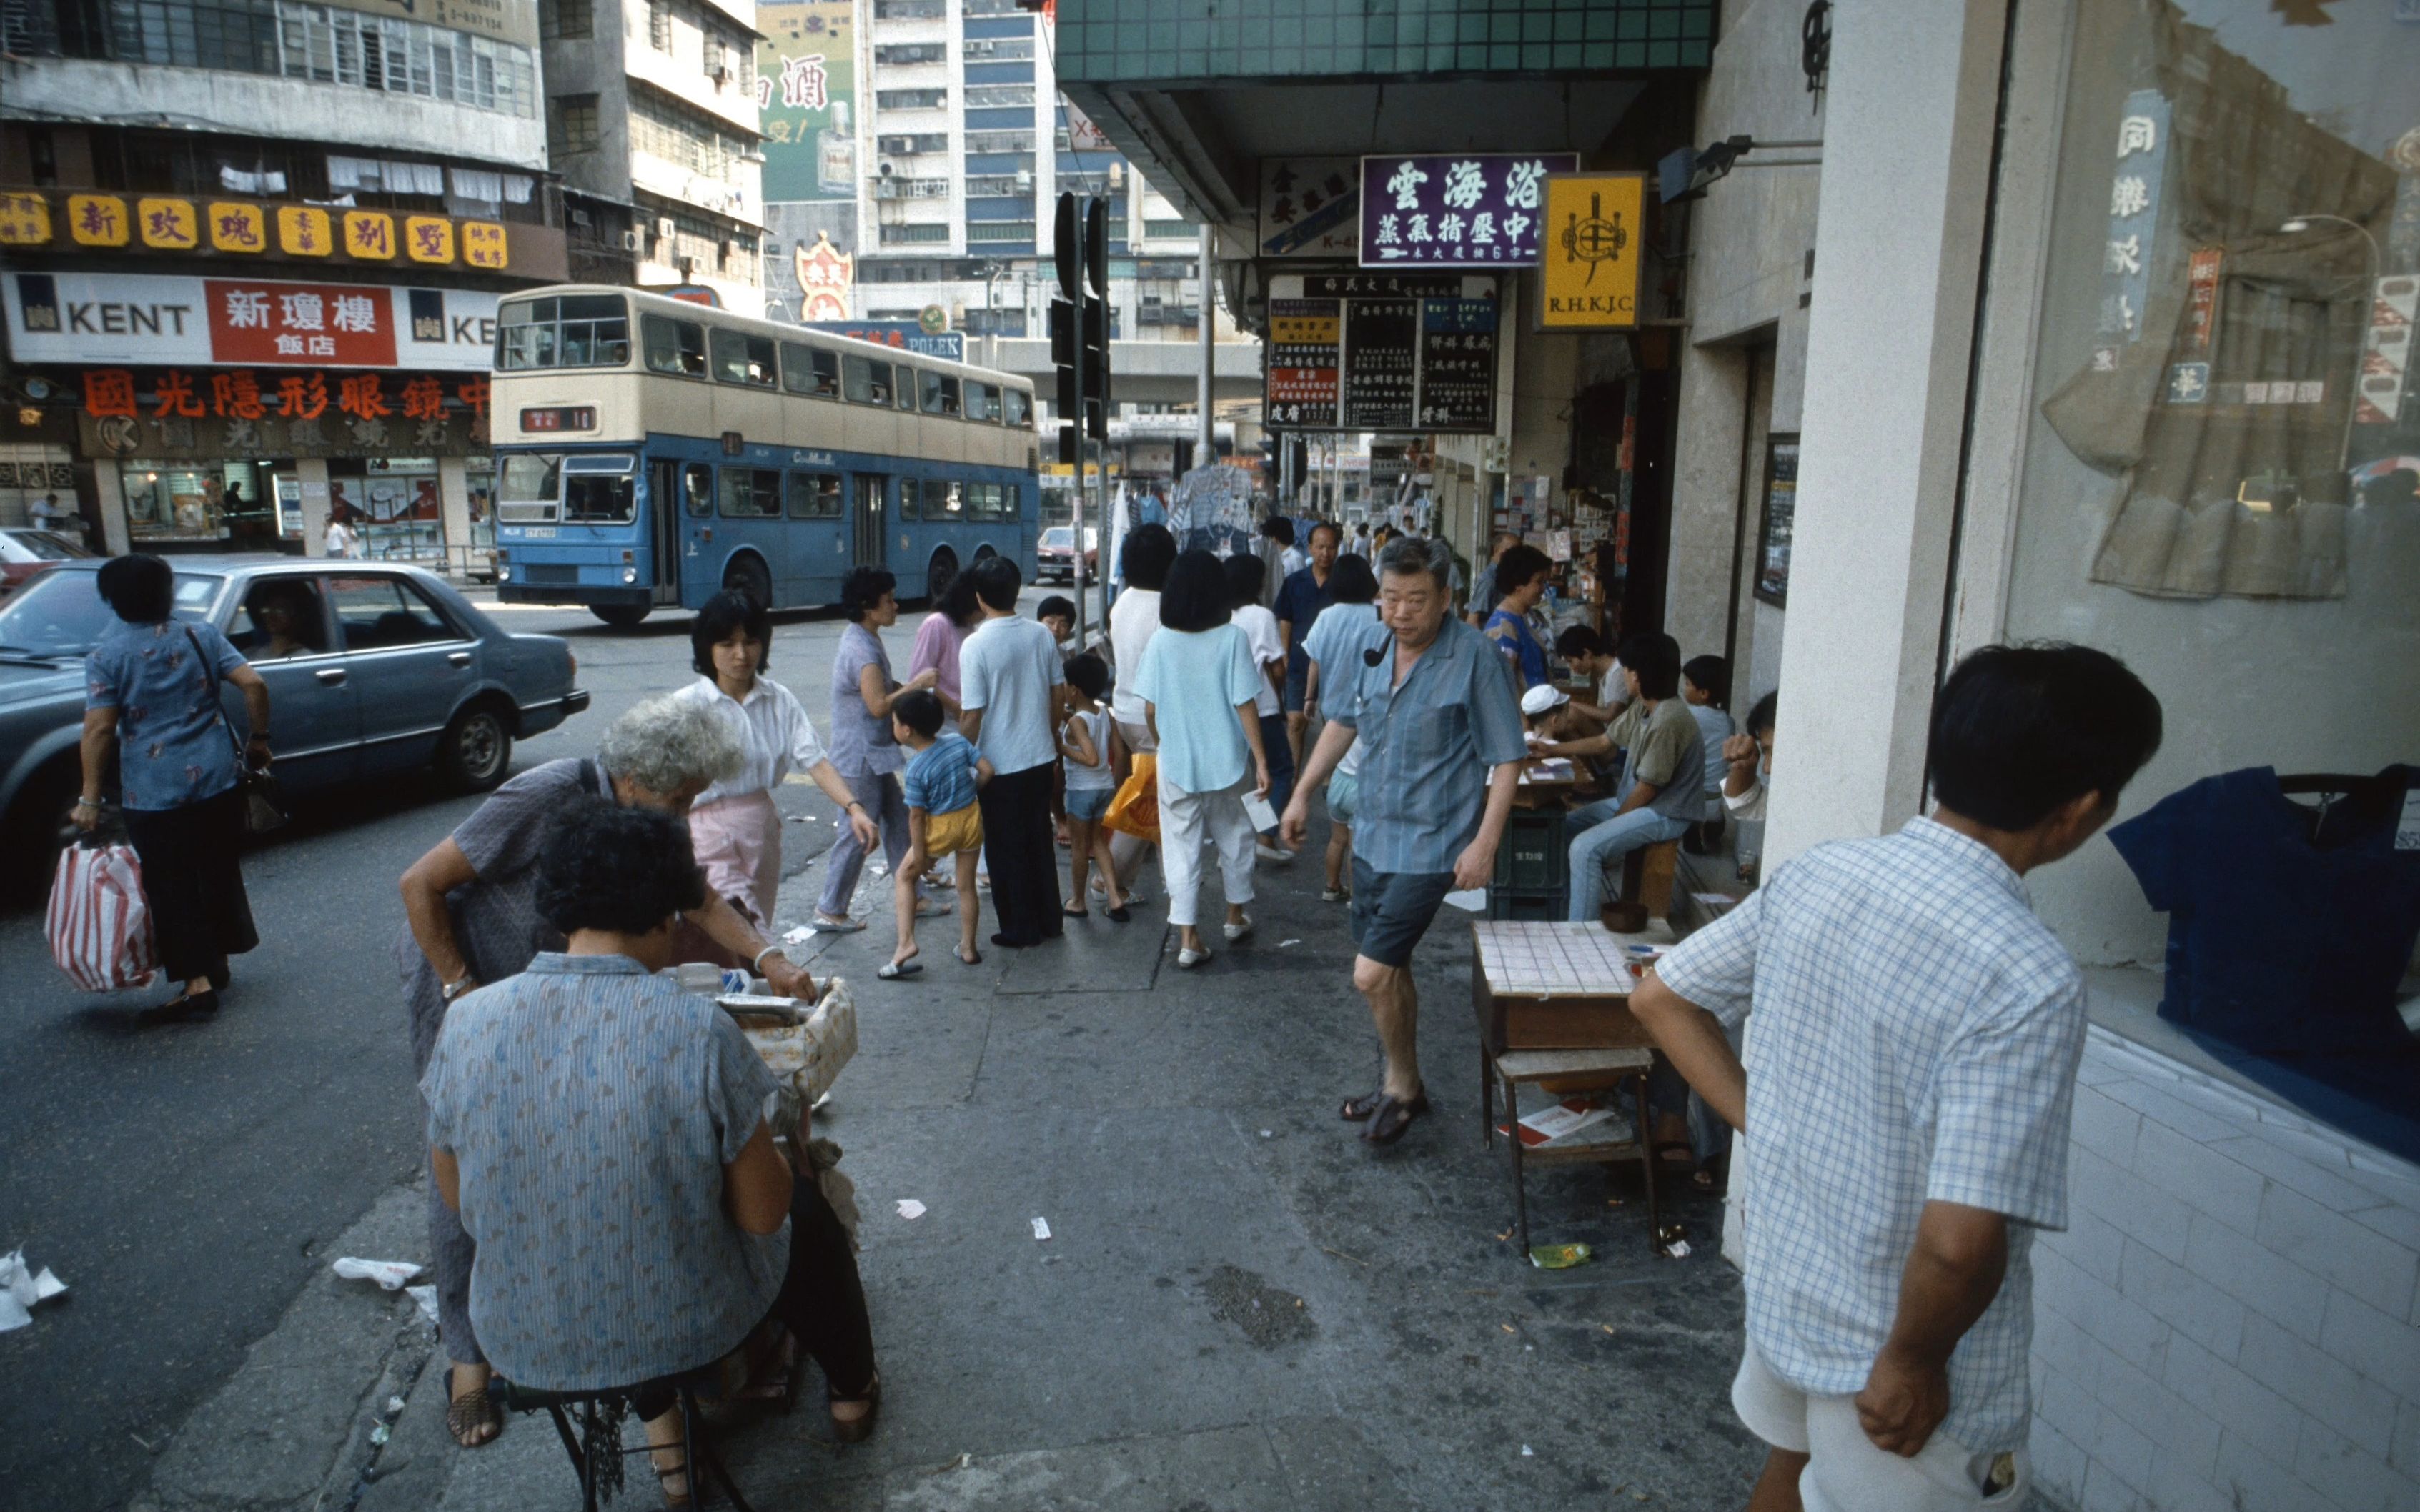 1985年的香港 80年代香港昔日的那些旧时光,锦绣繁华的东方之珠